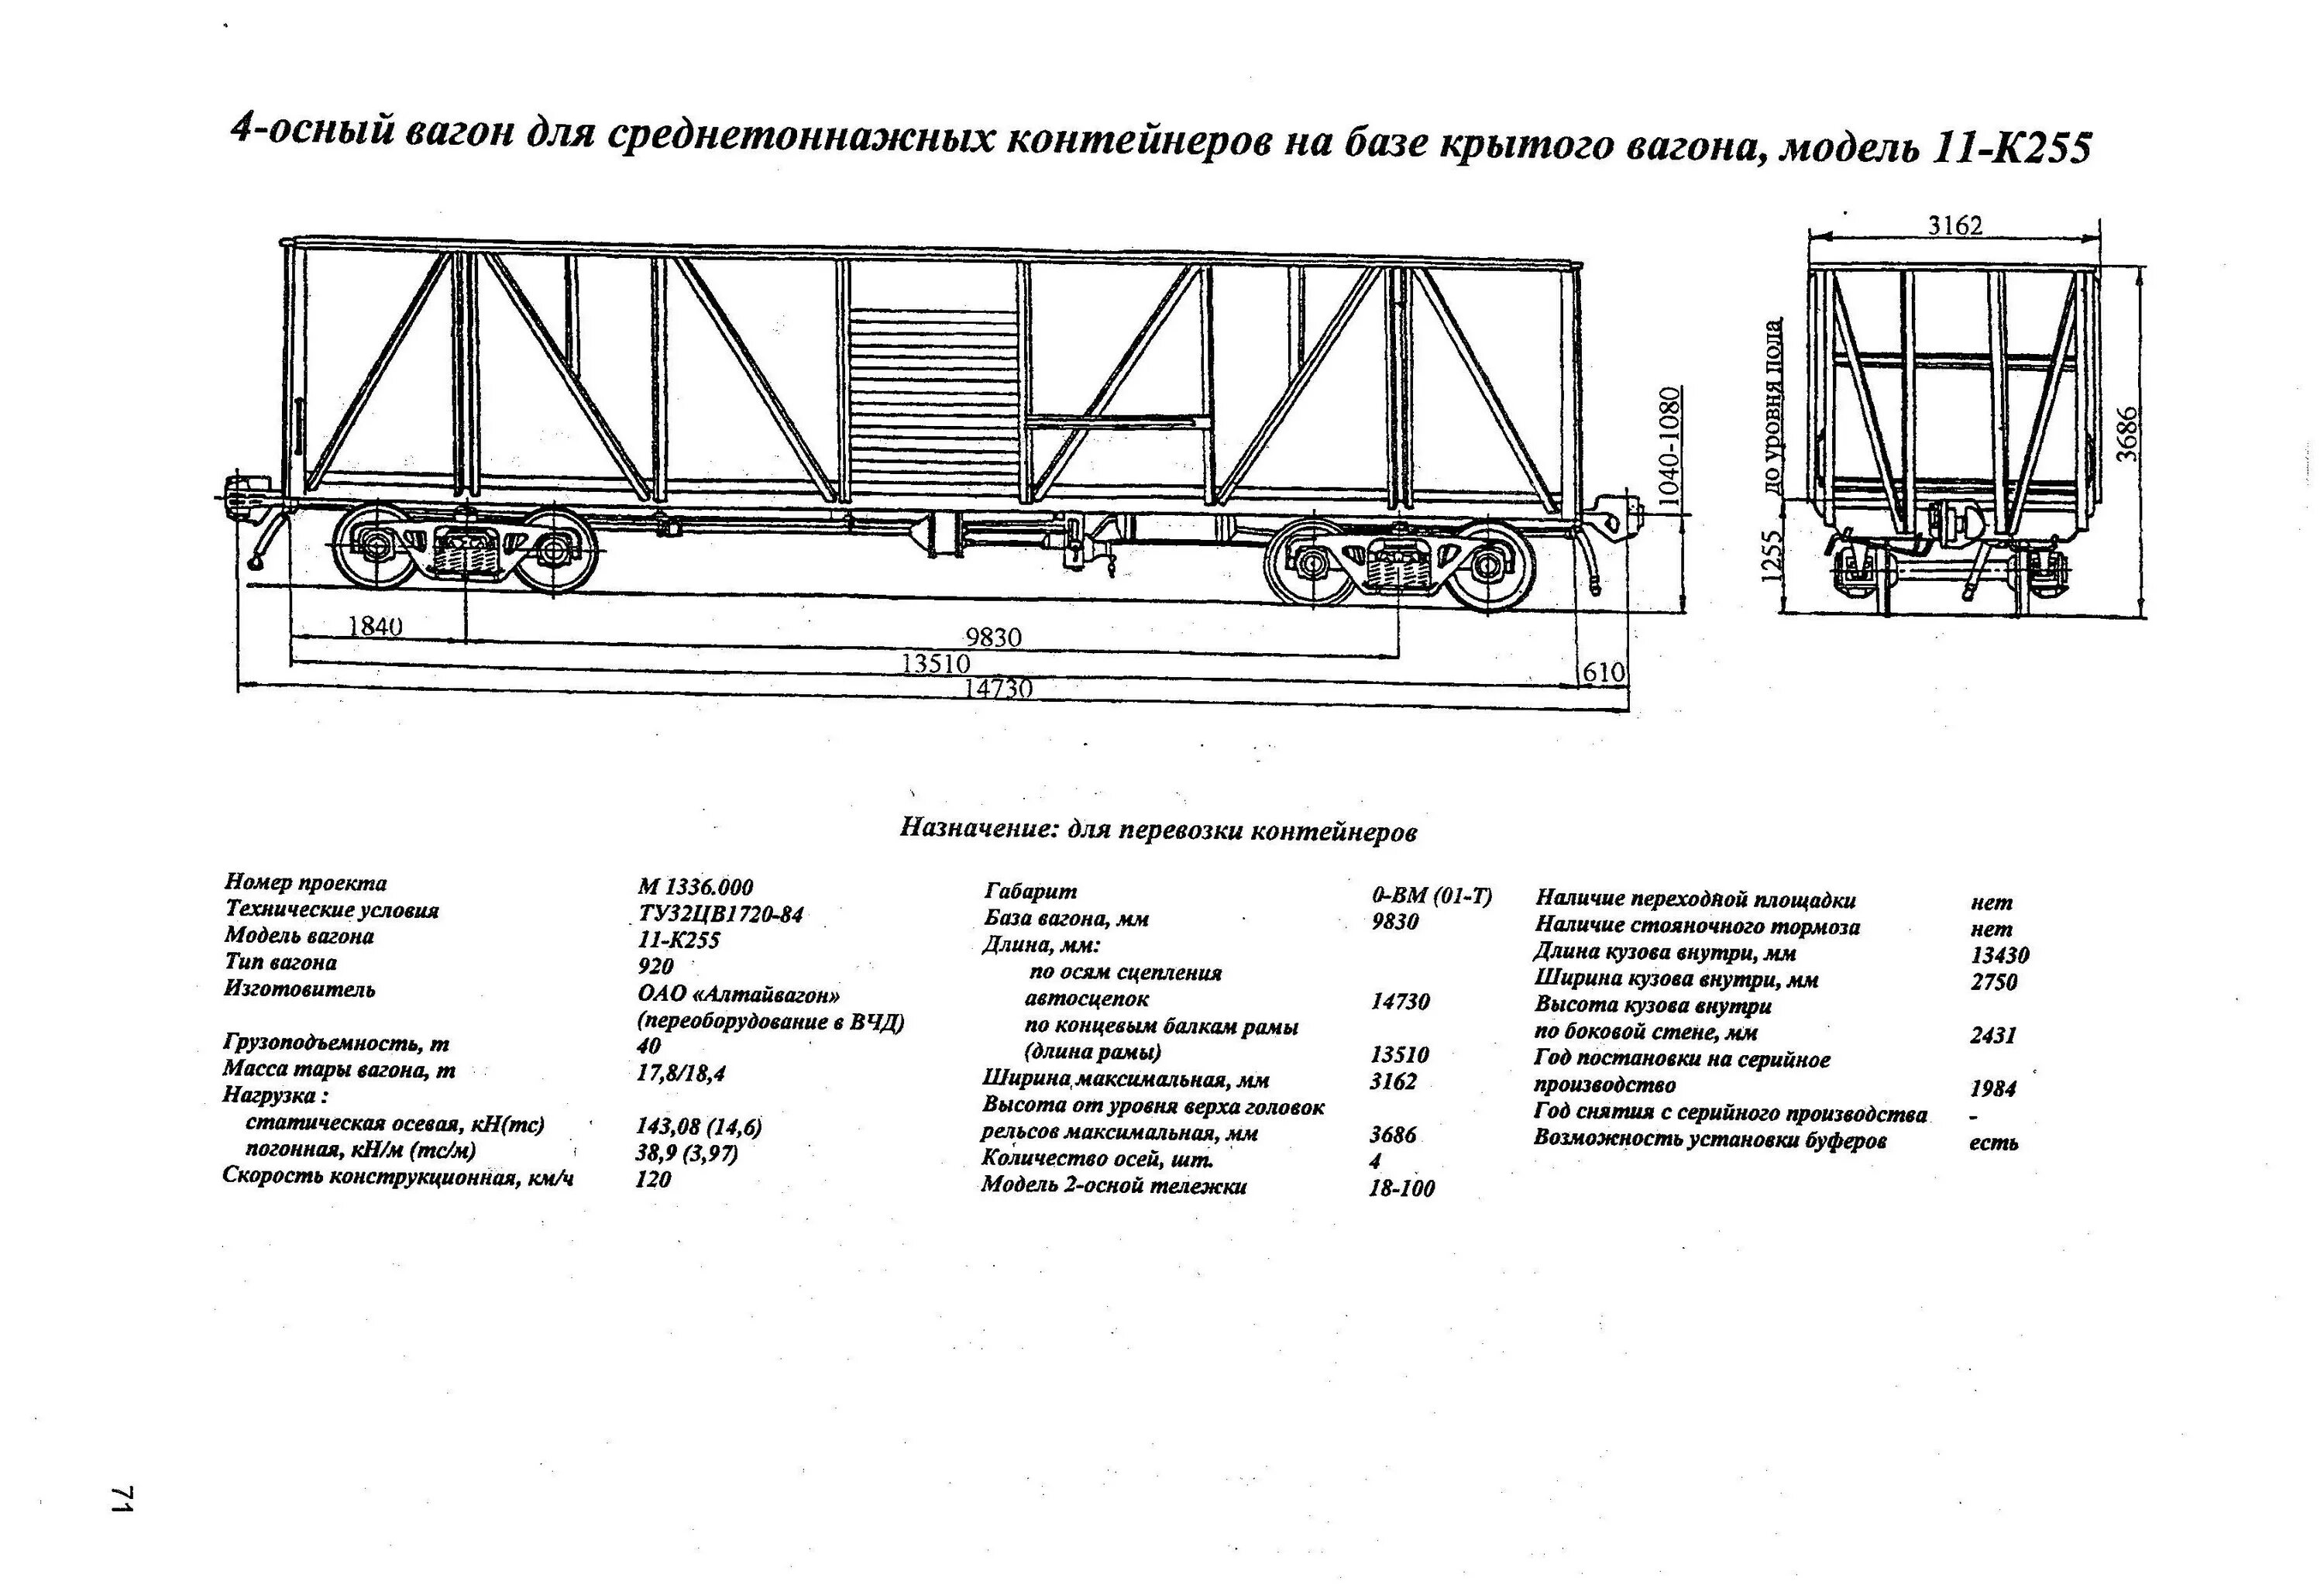 4-Осный вагон для среднетоннажных контейнеров. Полувагон для среднетоннажных контейнеров. Грузоподъемность крытого вагона 4 осного.